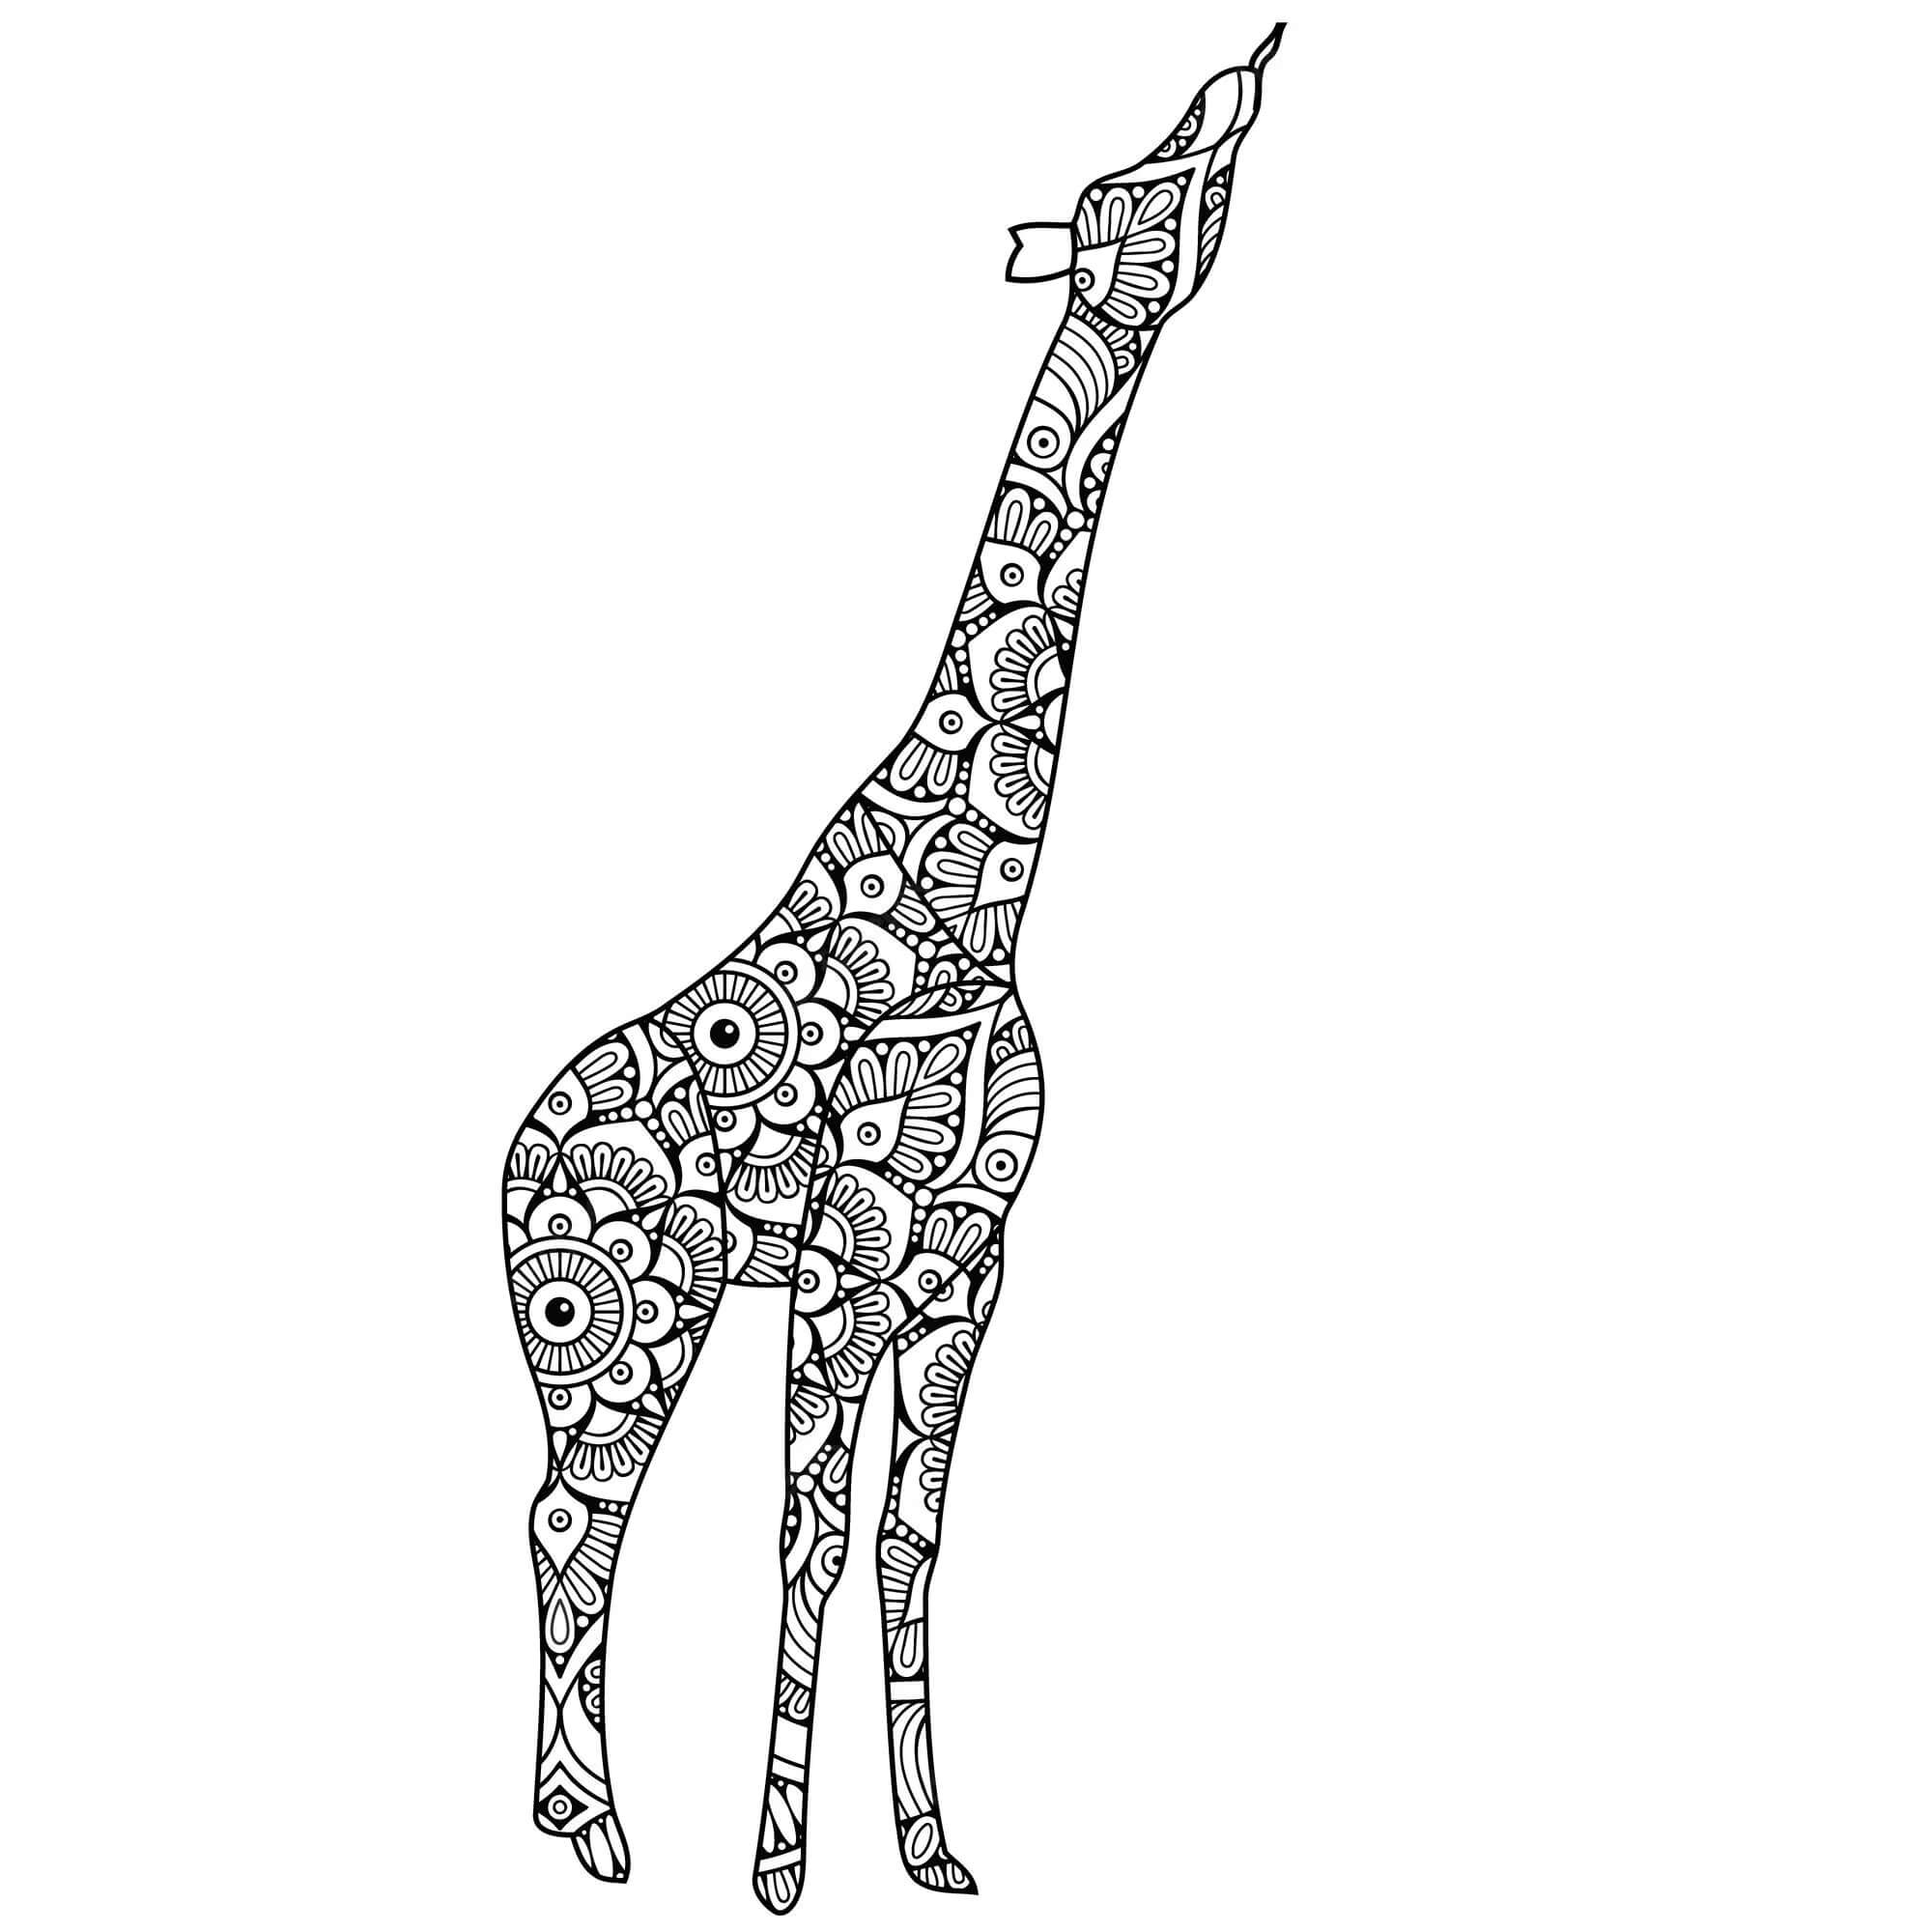 Mandala Giraffe Coloring Page - Sheet 8 Mandalas